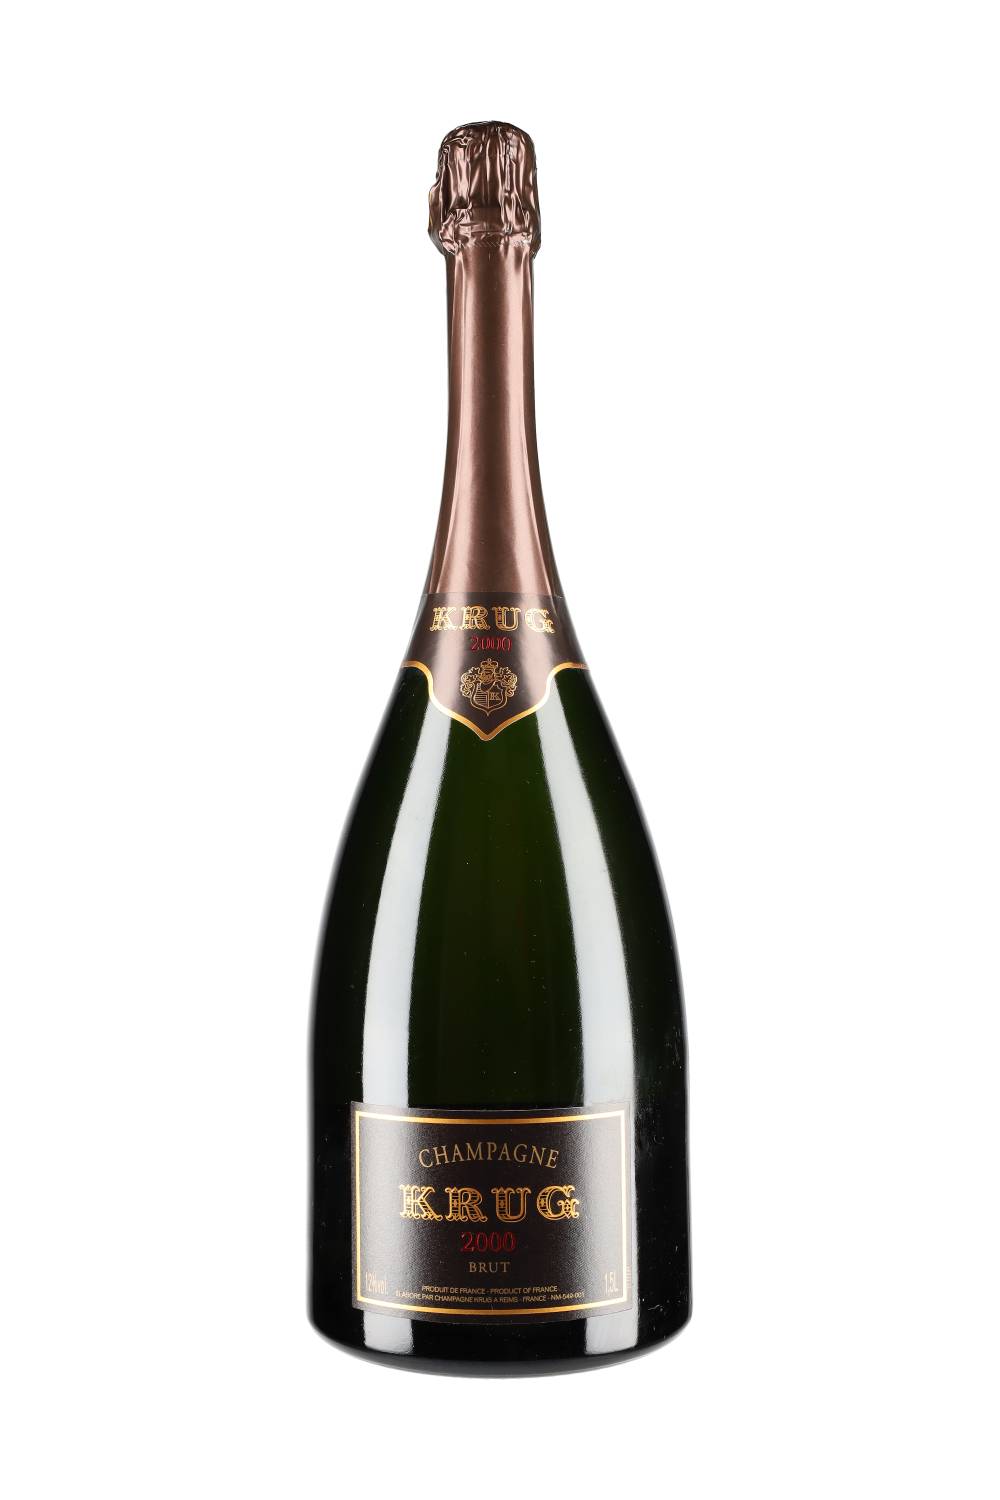 Krug Champagne Vintage 2000 Magnum